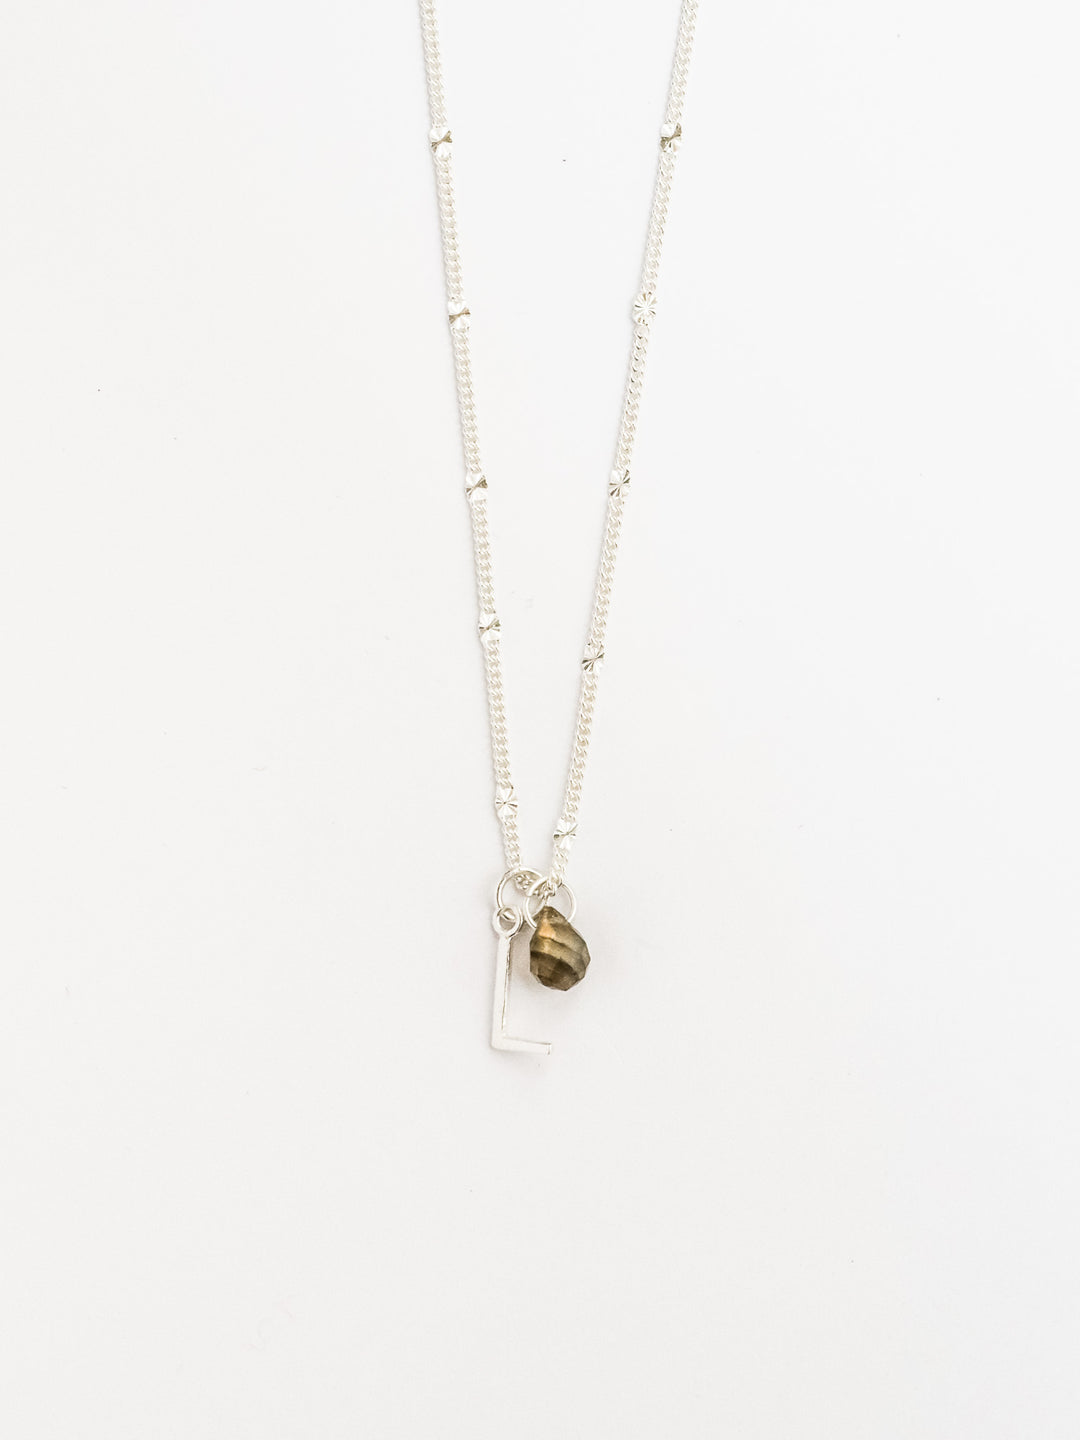 Personalized Necklace mit zwei Anhängern (waterproof) - Karneol